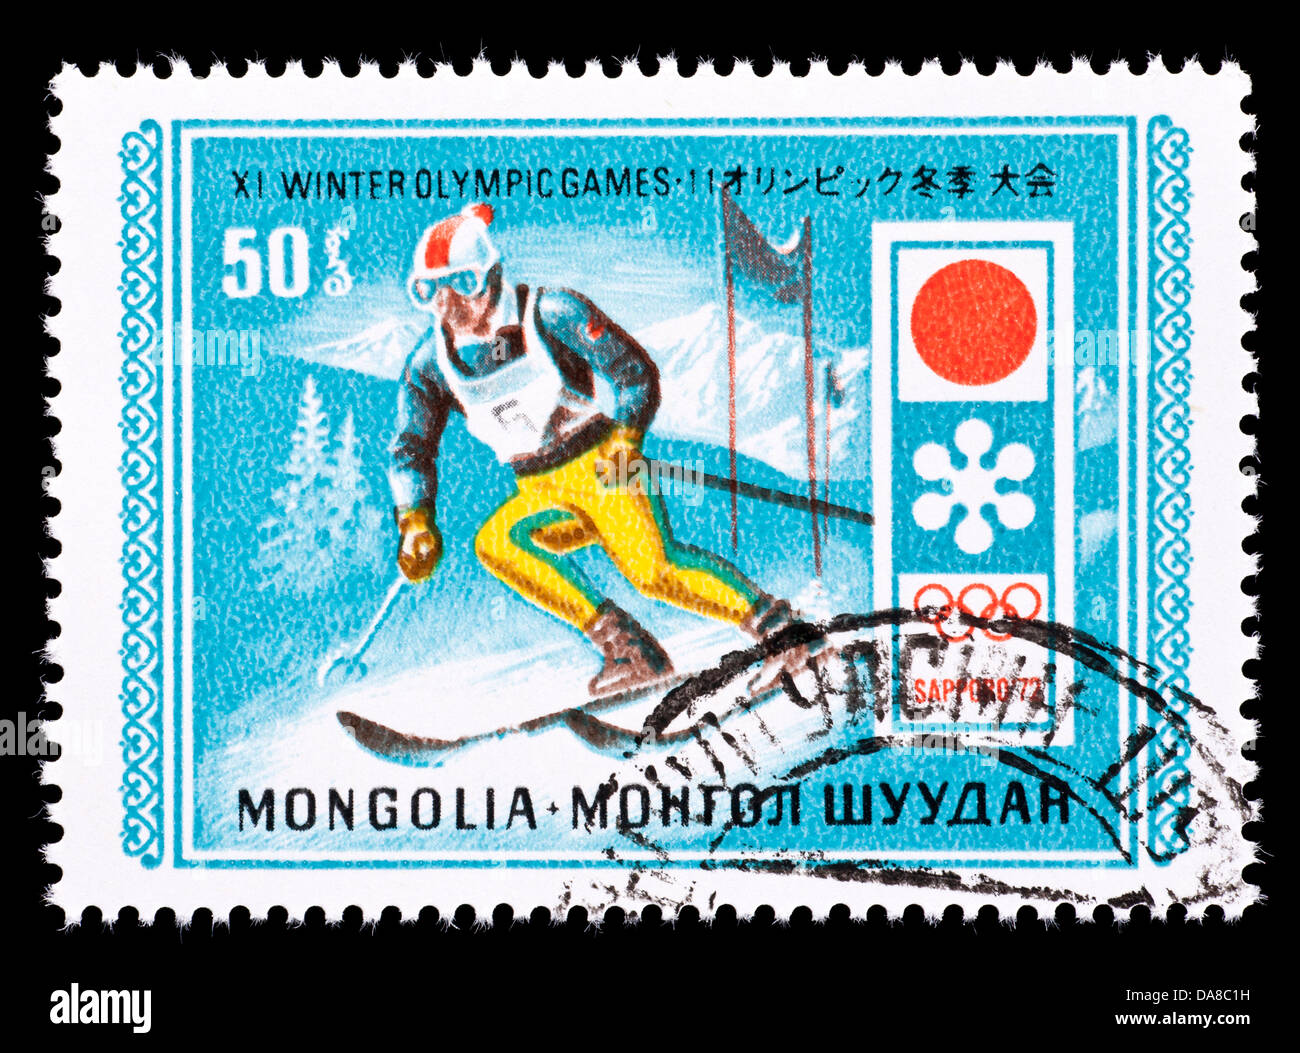 Francobollo dalla Mongolia raffigurante una discesa sciatore, rilasciati per le Olimpiadi Invernali del 1972 a Sapporo, Giappone. Foto Stock